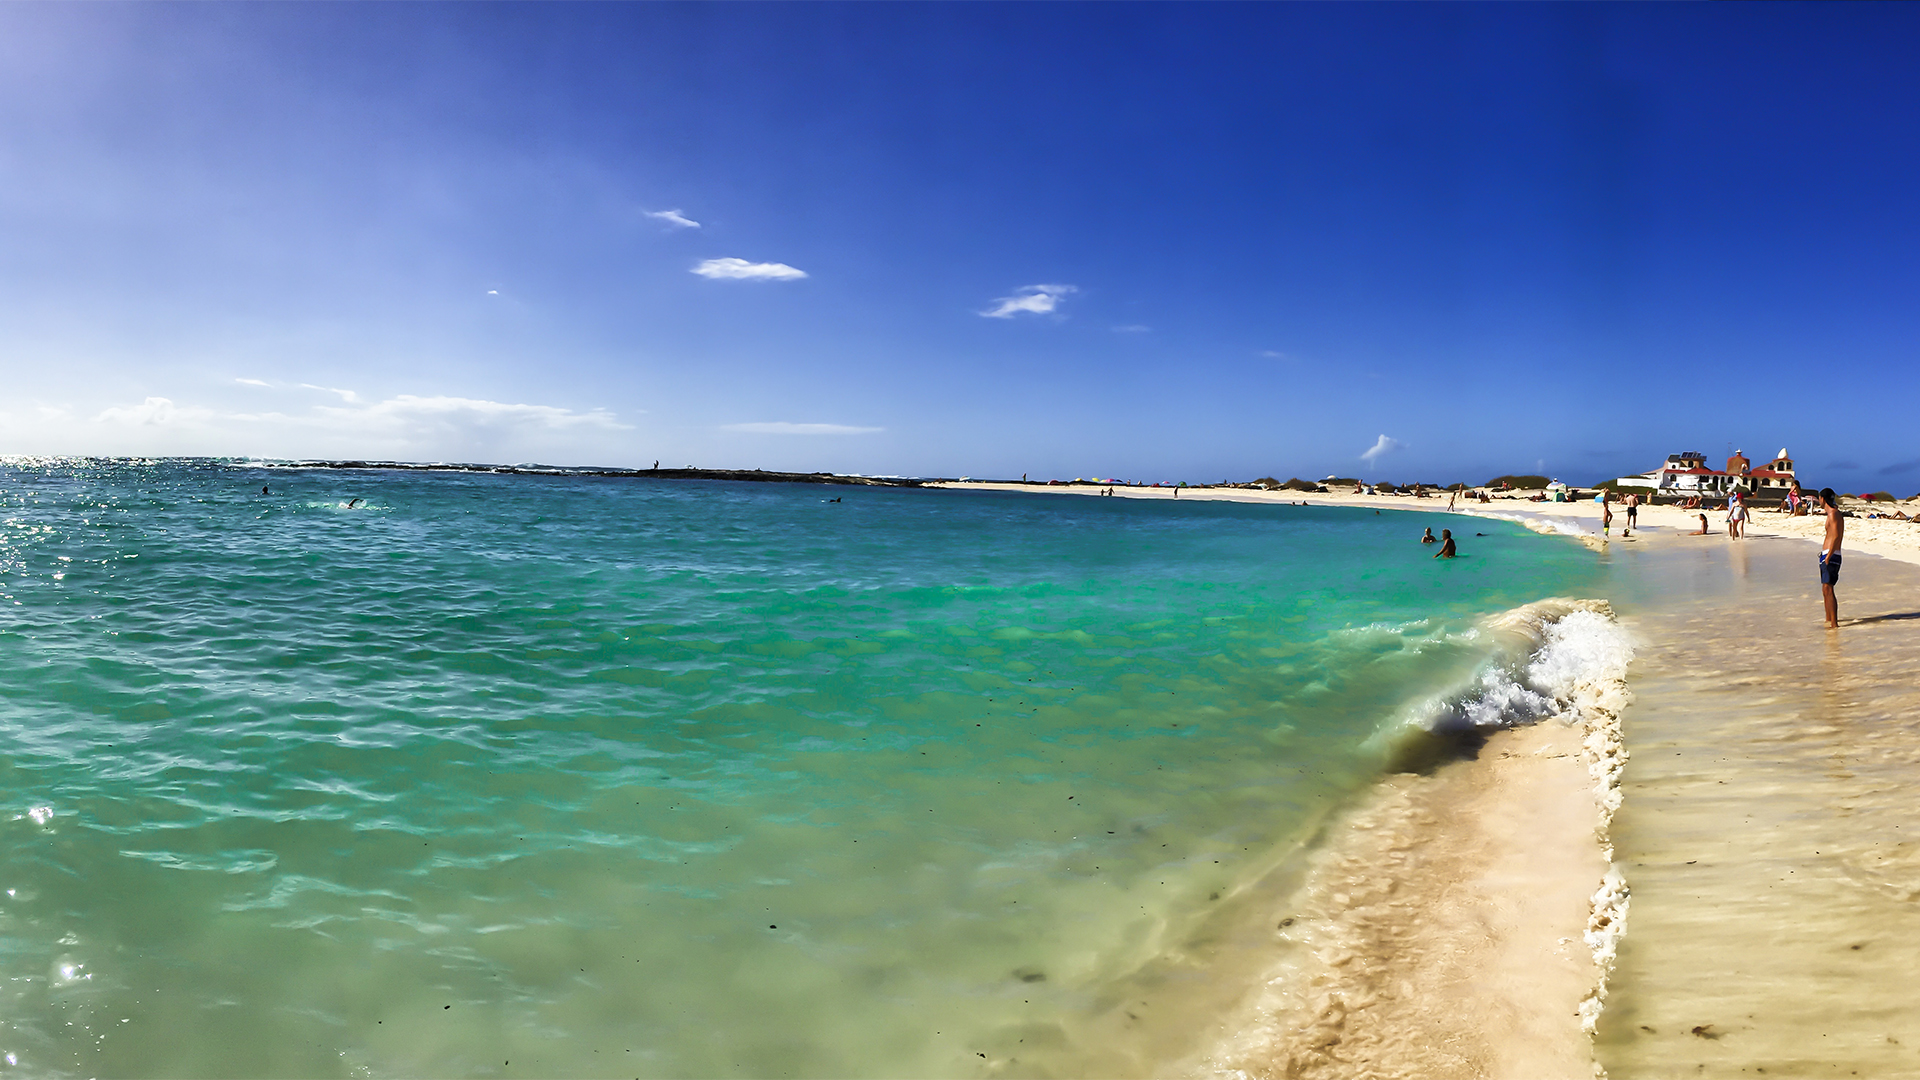 Sonnen und baden auf Fuerteventura.